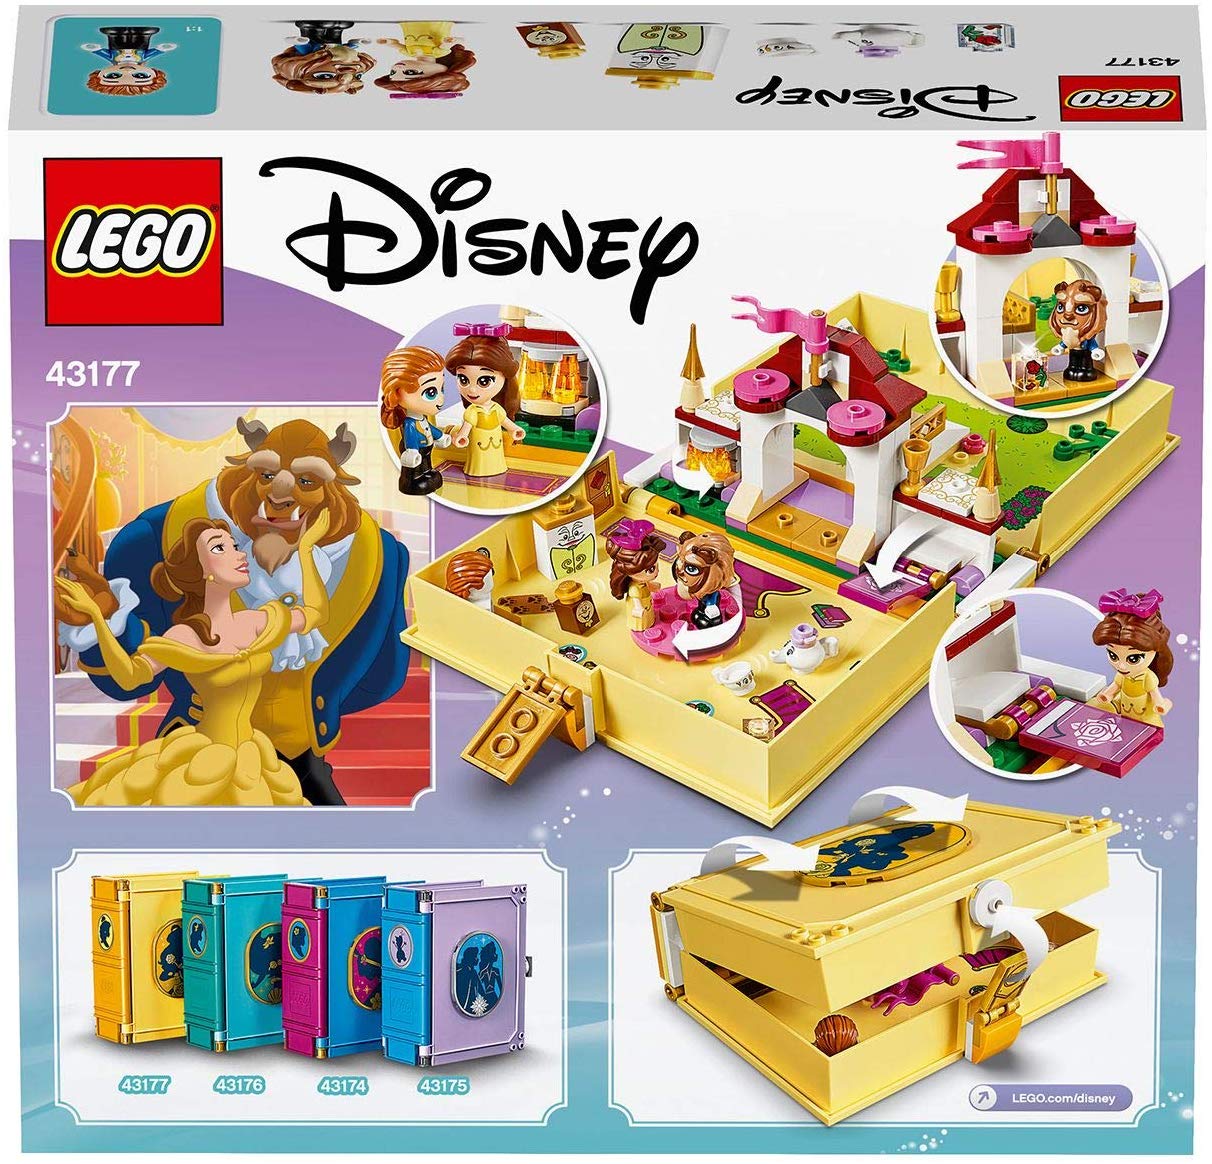 Конструктор Lego Disney Princess - Книга сказочных приключений Белль  